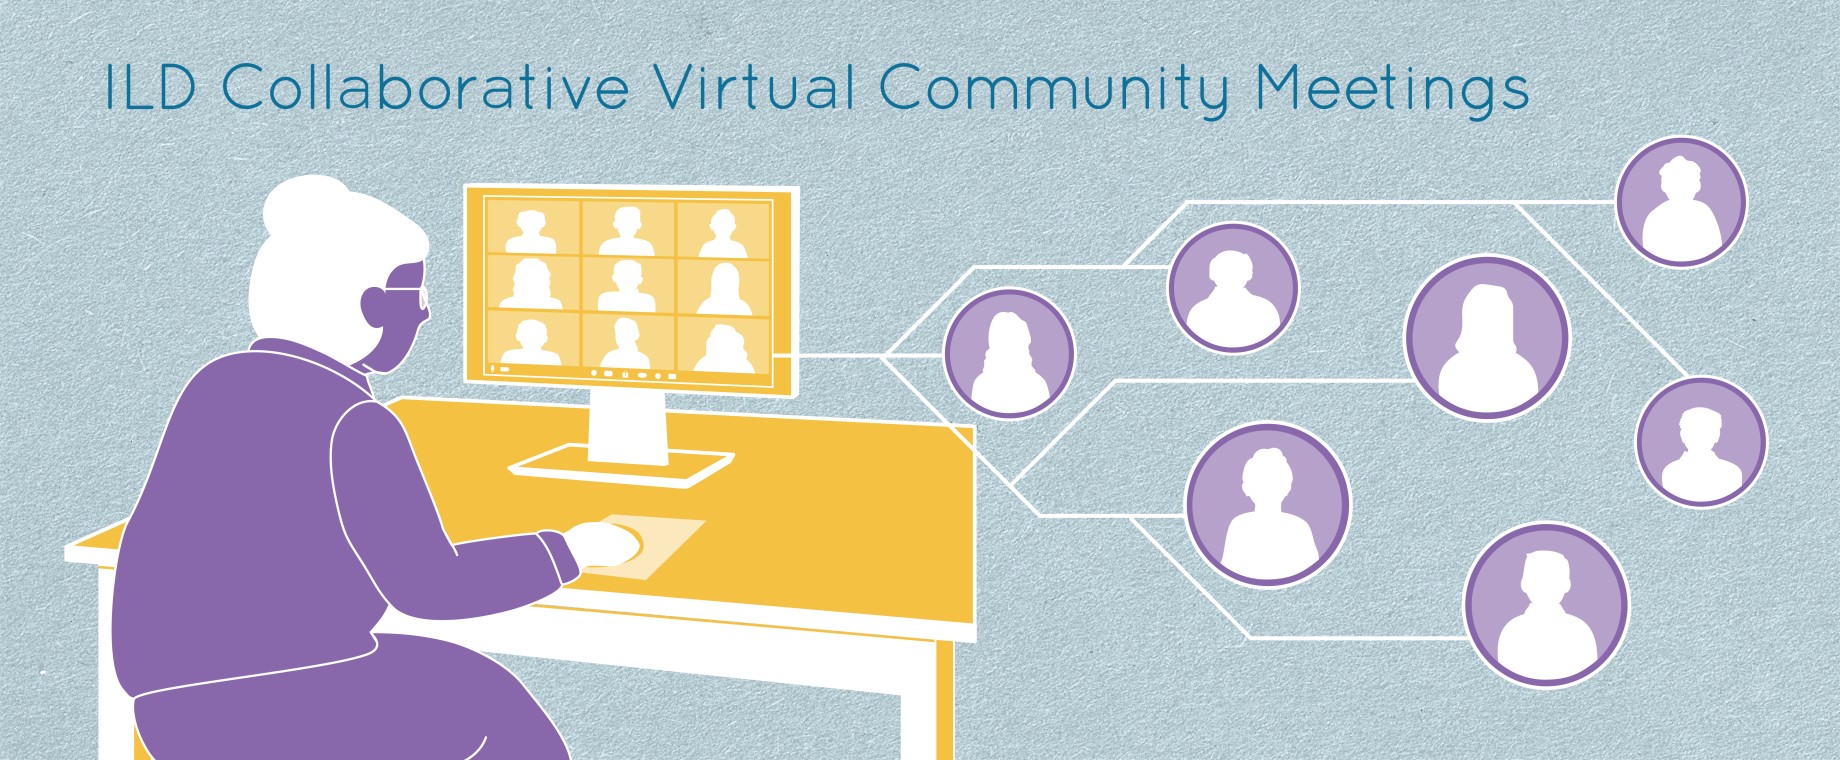 ildc-virtual-community-meetings_slide.jpg